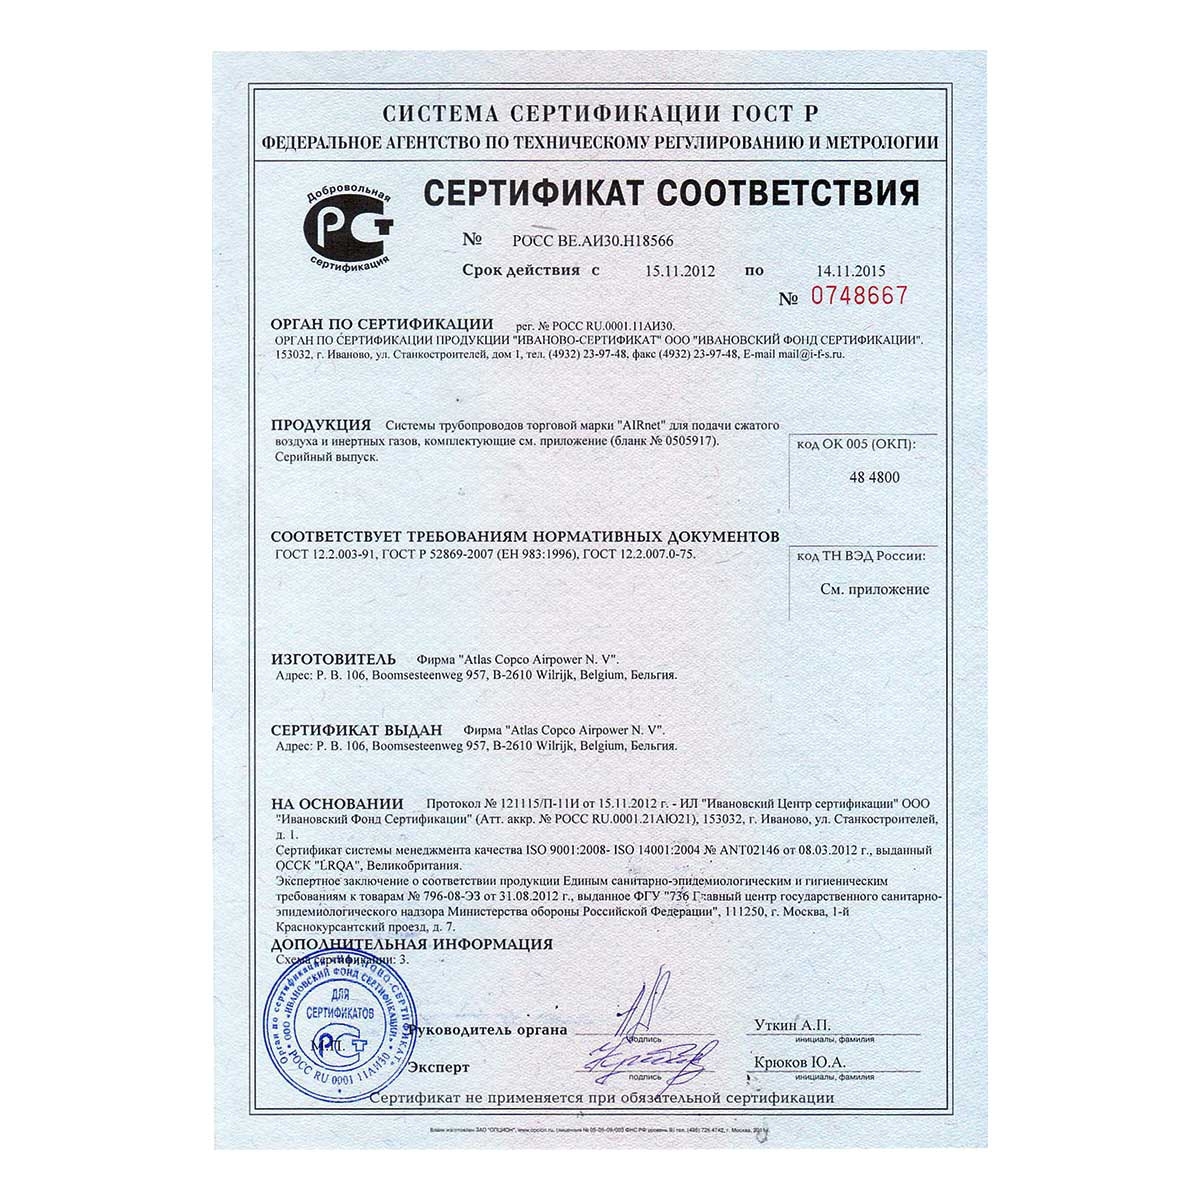 Сертификат соответсвия на запорные краны AIRnet